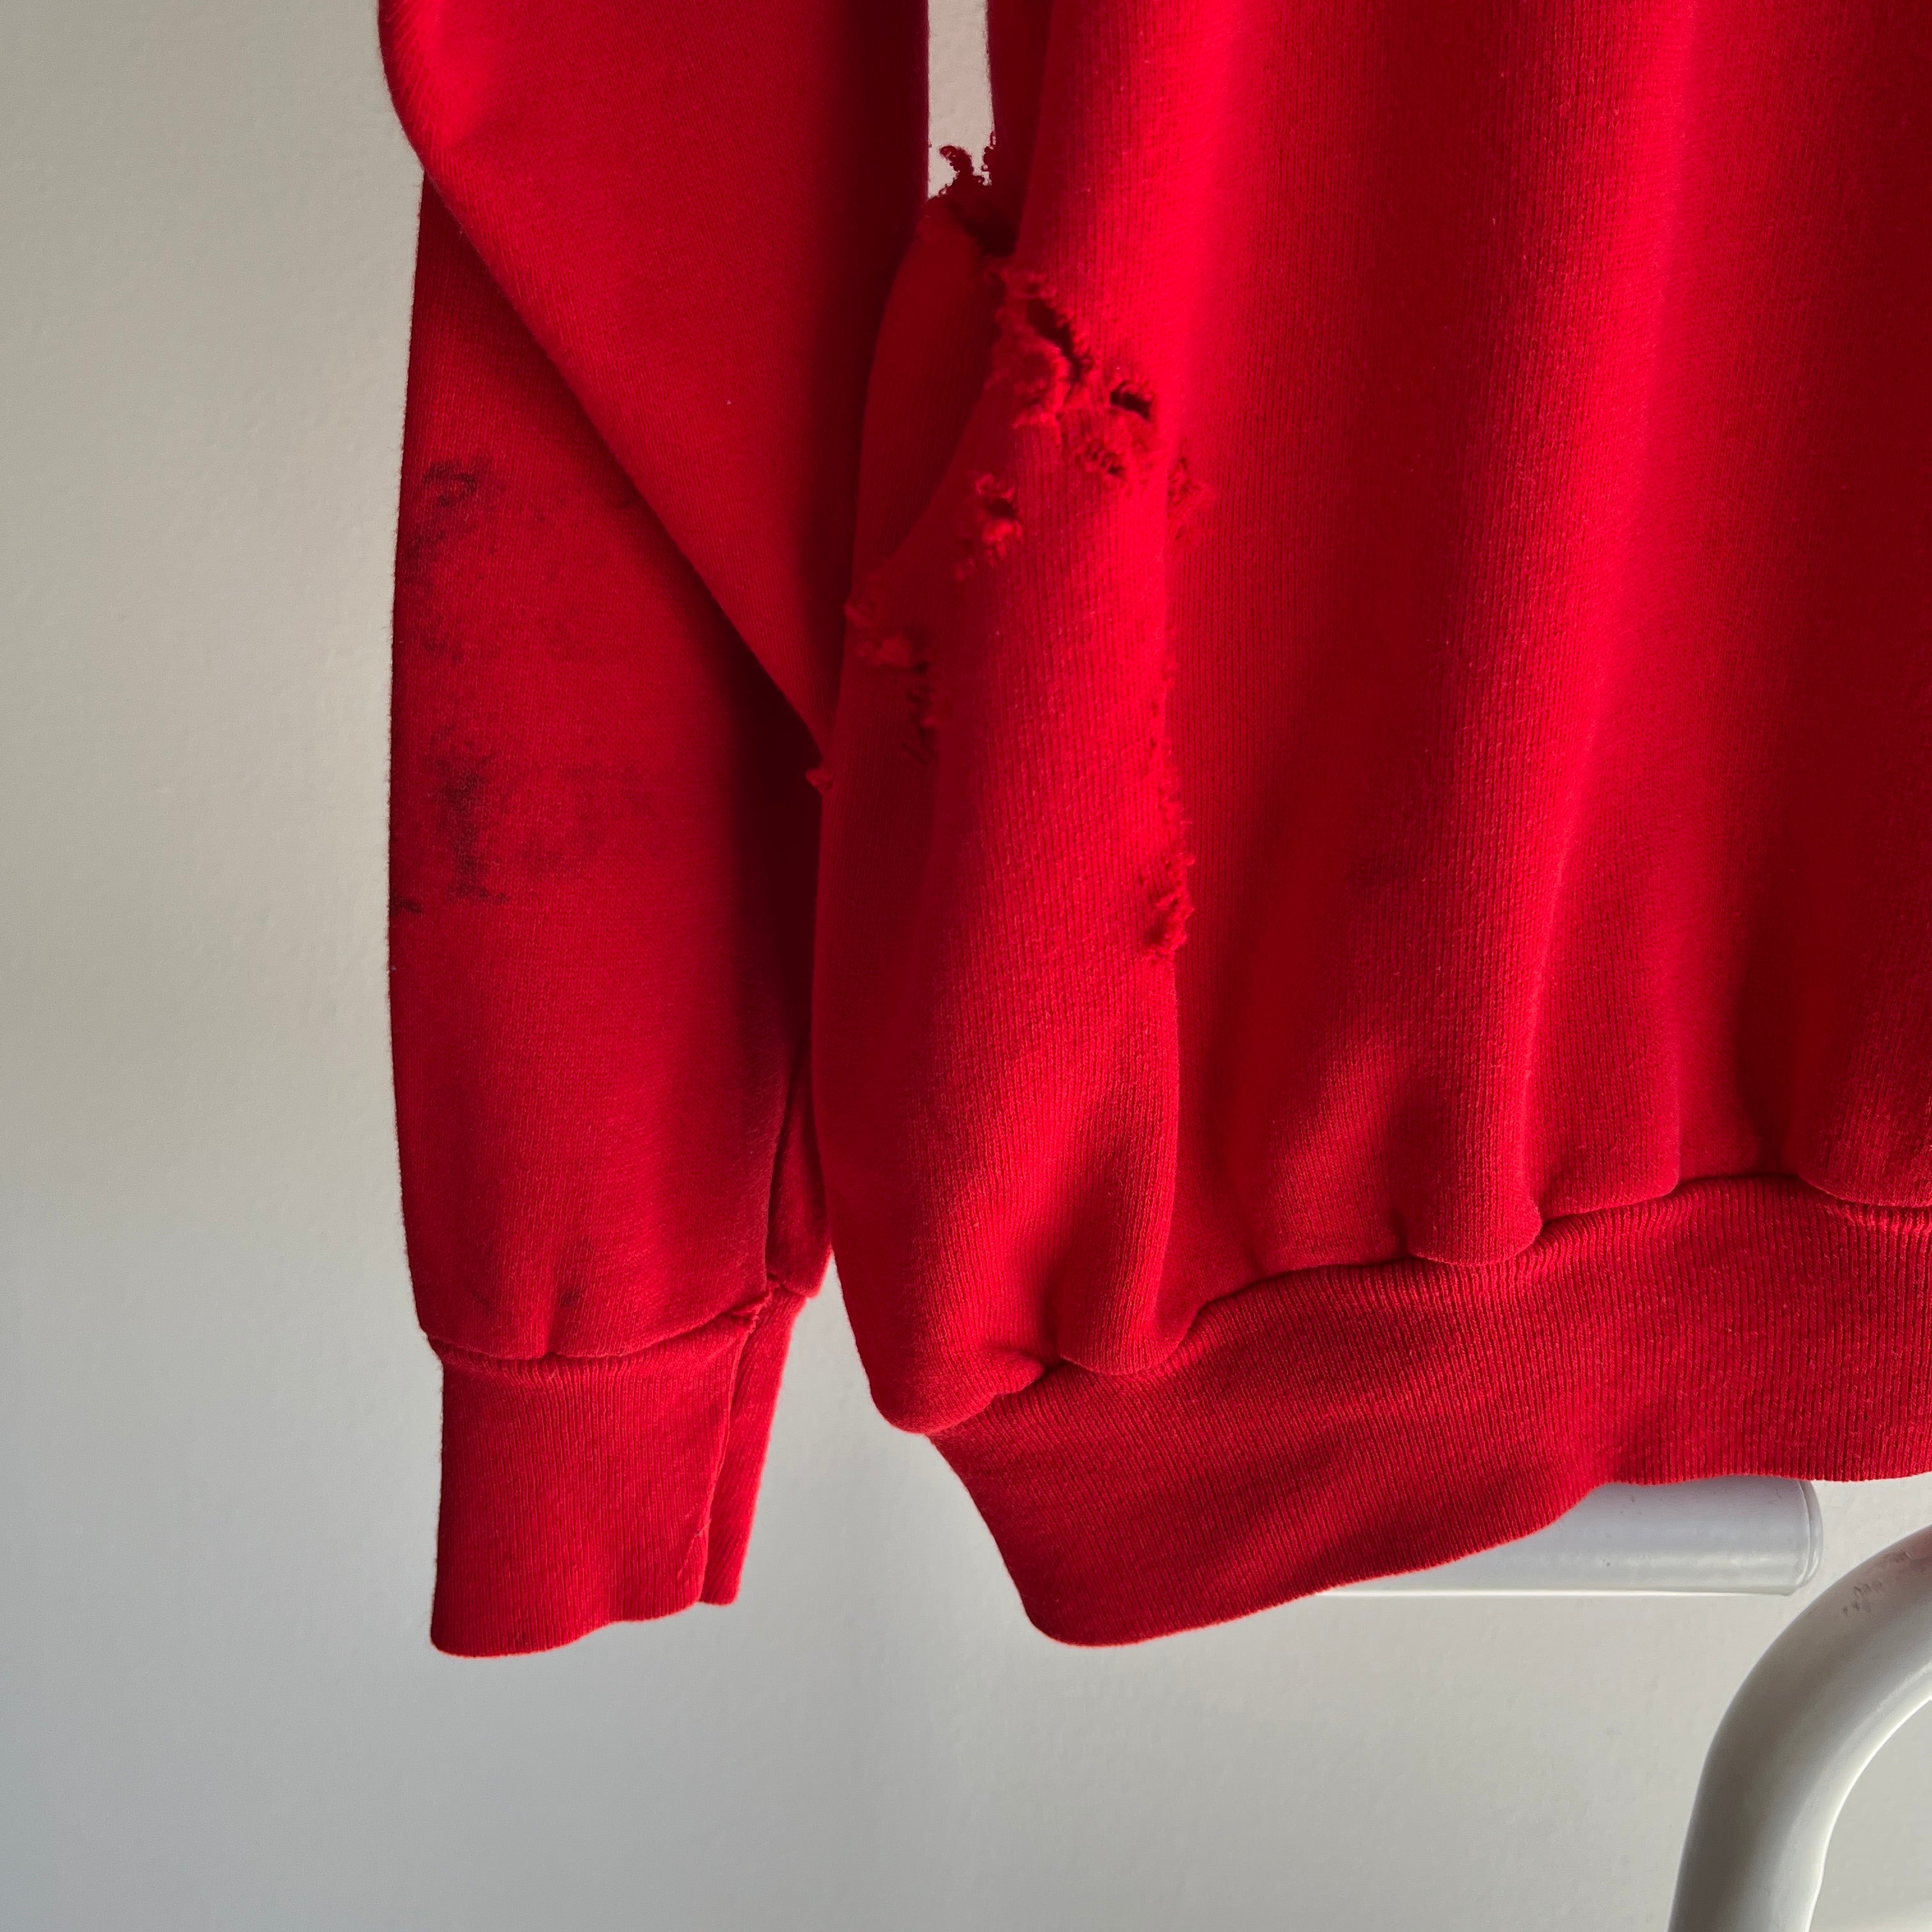 1980s Lipstick Red F Grade Got Caught in a Bike Chain Destroyed Sweatshirt